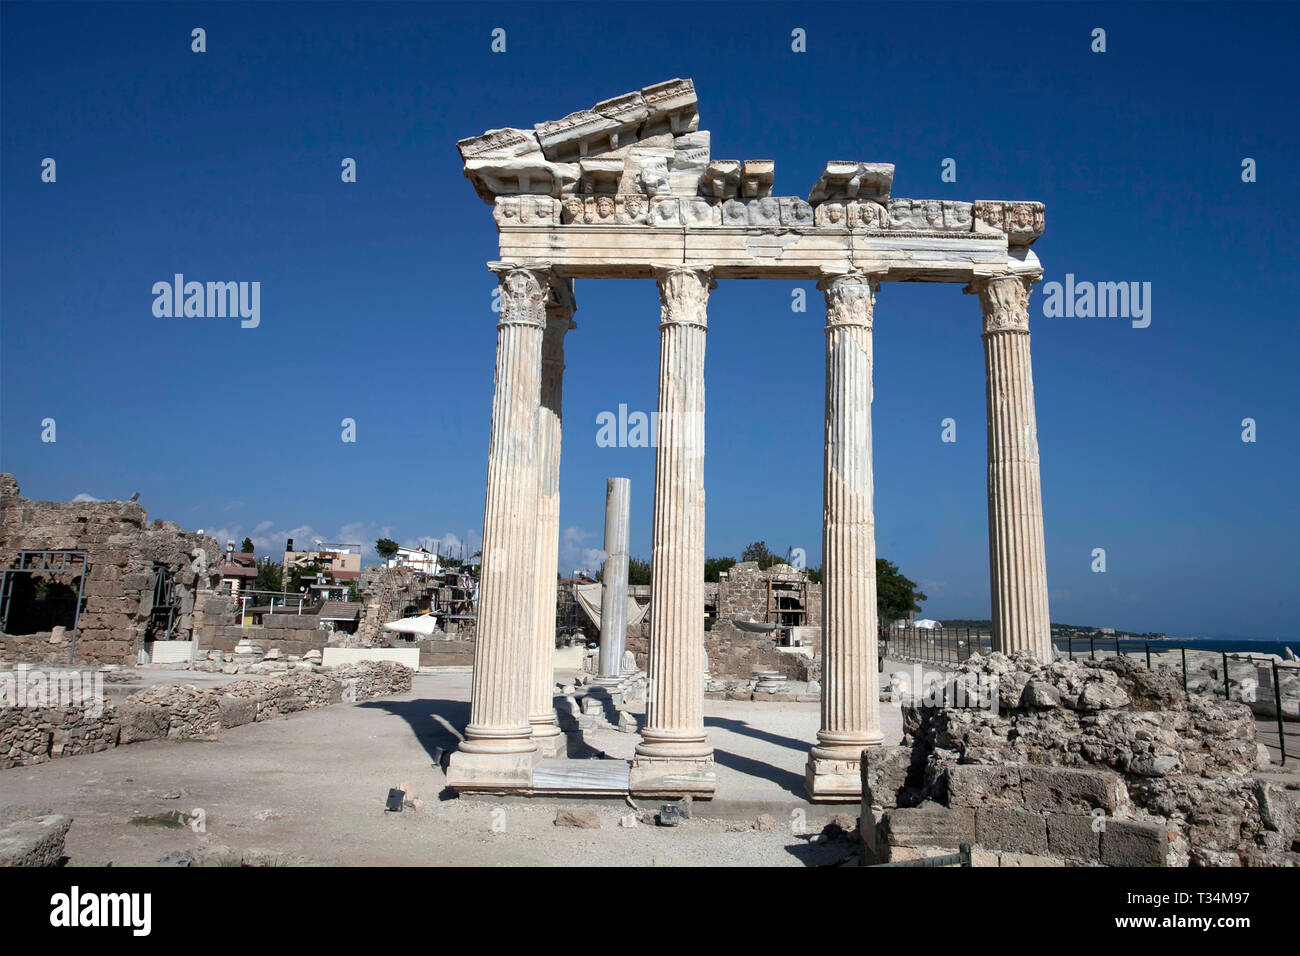 Temple of Apollo, Side Roman ruins, Antalya, Turkey Stock Photo